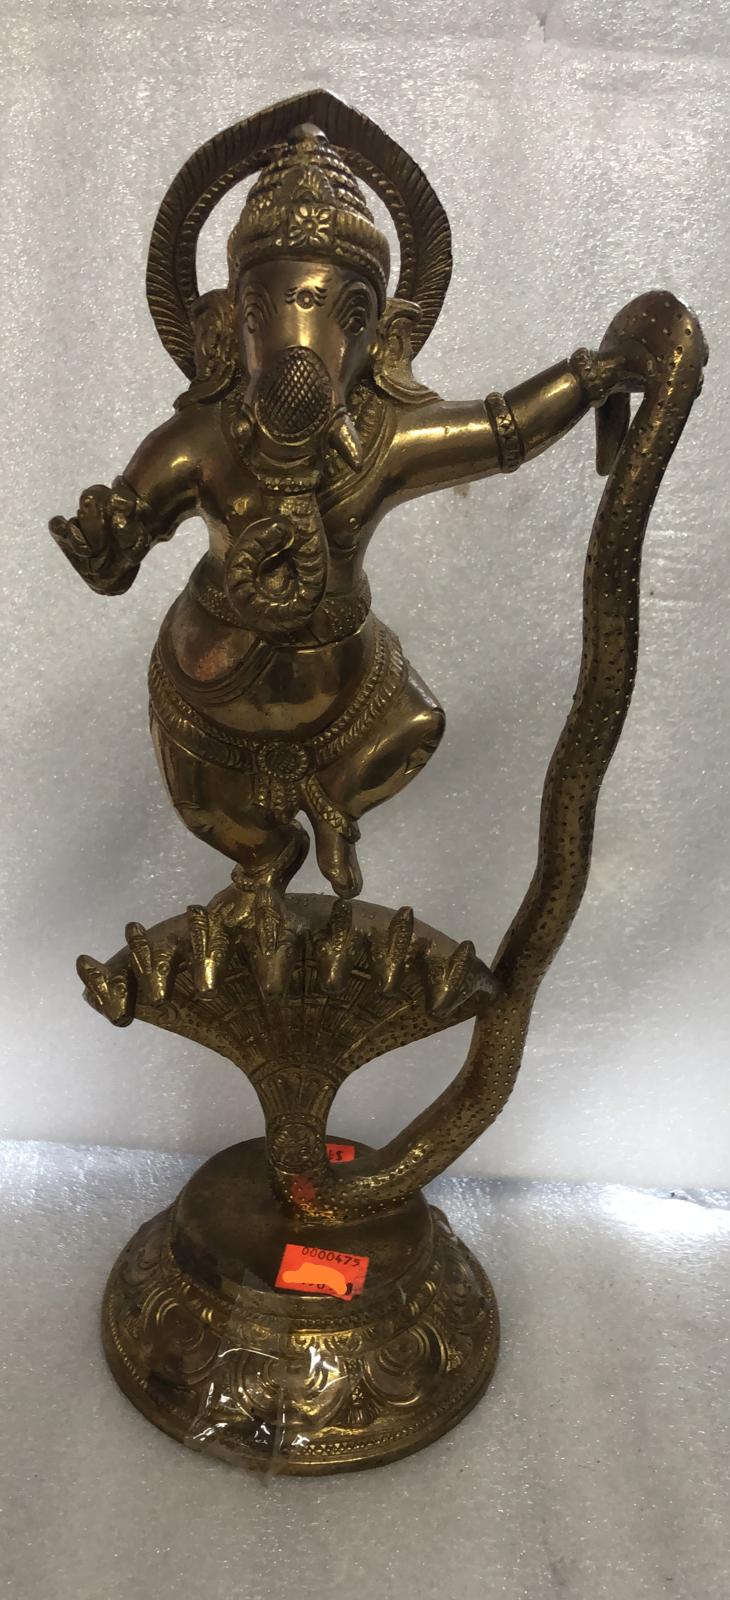 Ganesh ji Brass